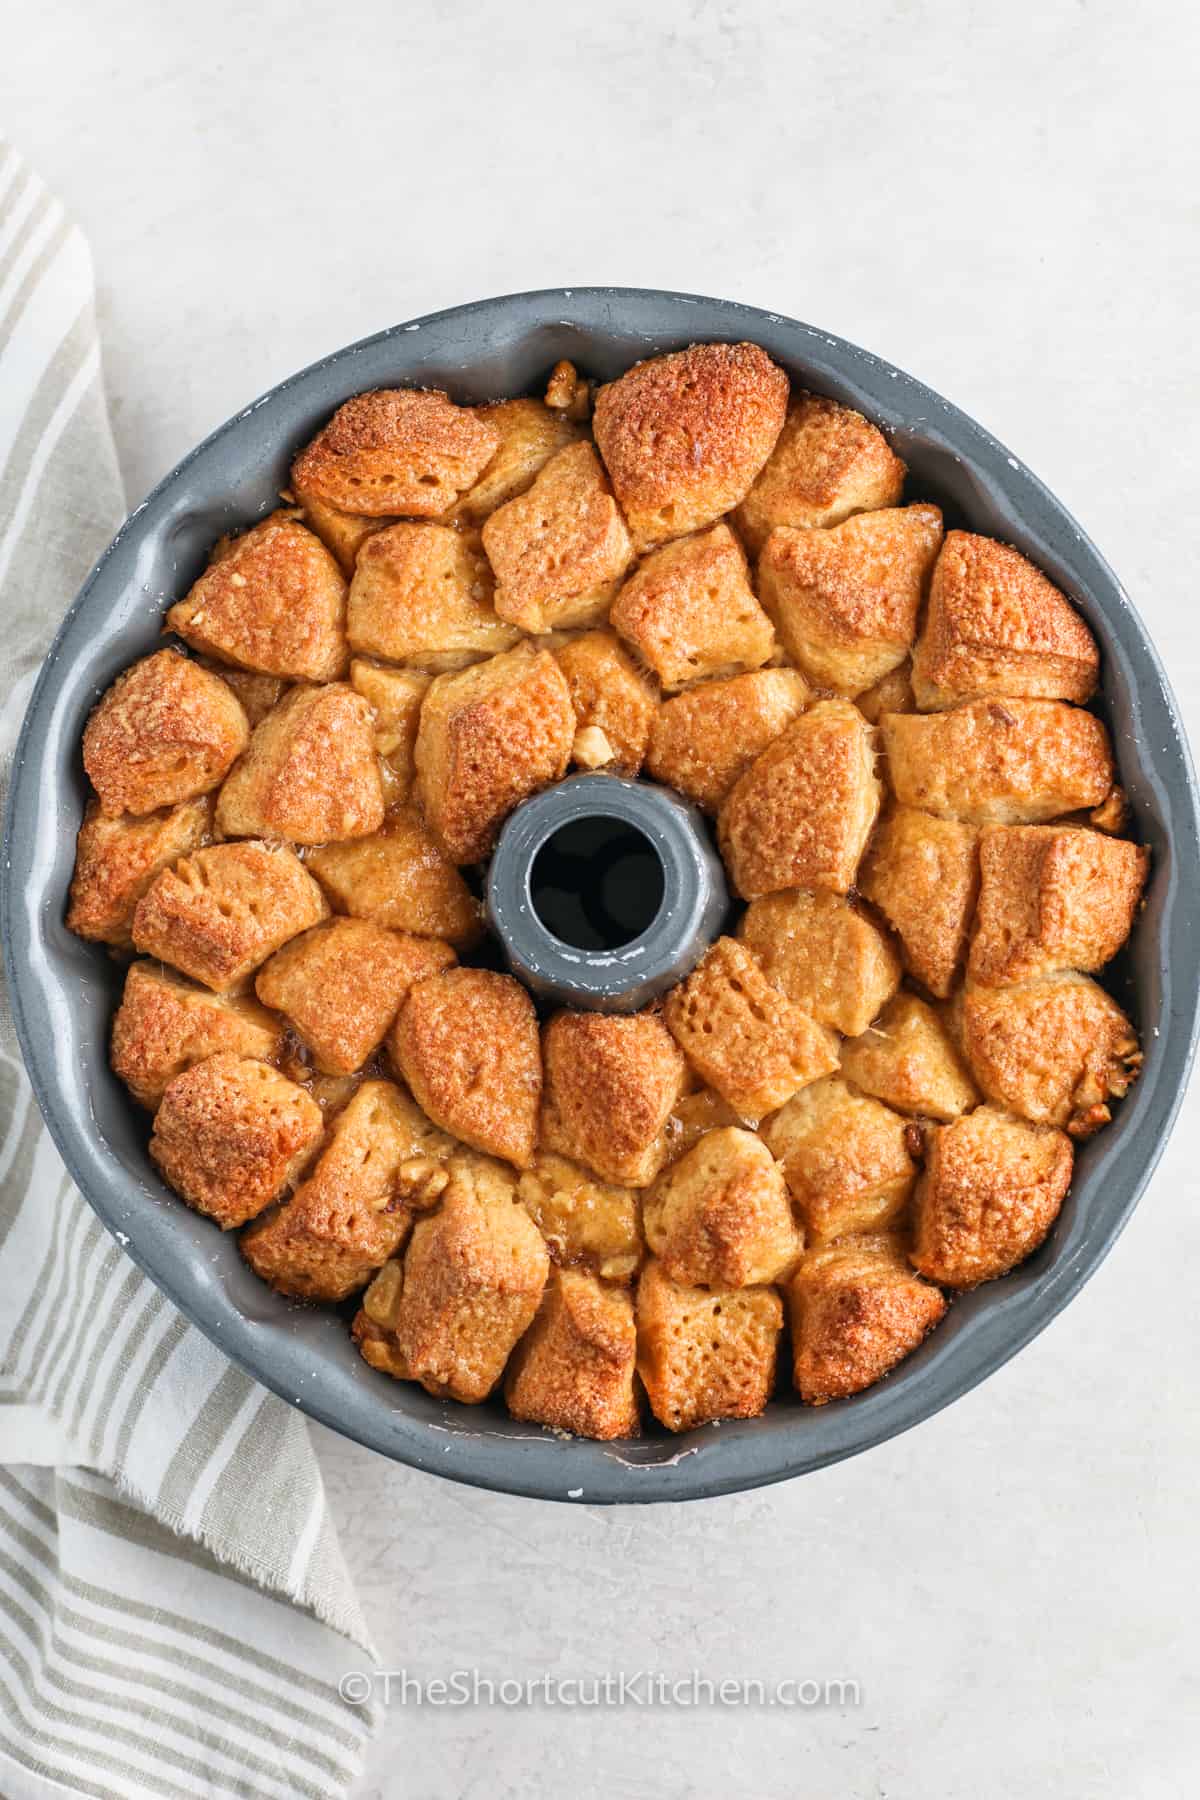 baked recipe for Monkey Bread in a bundt pan